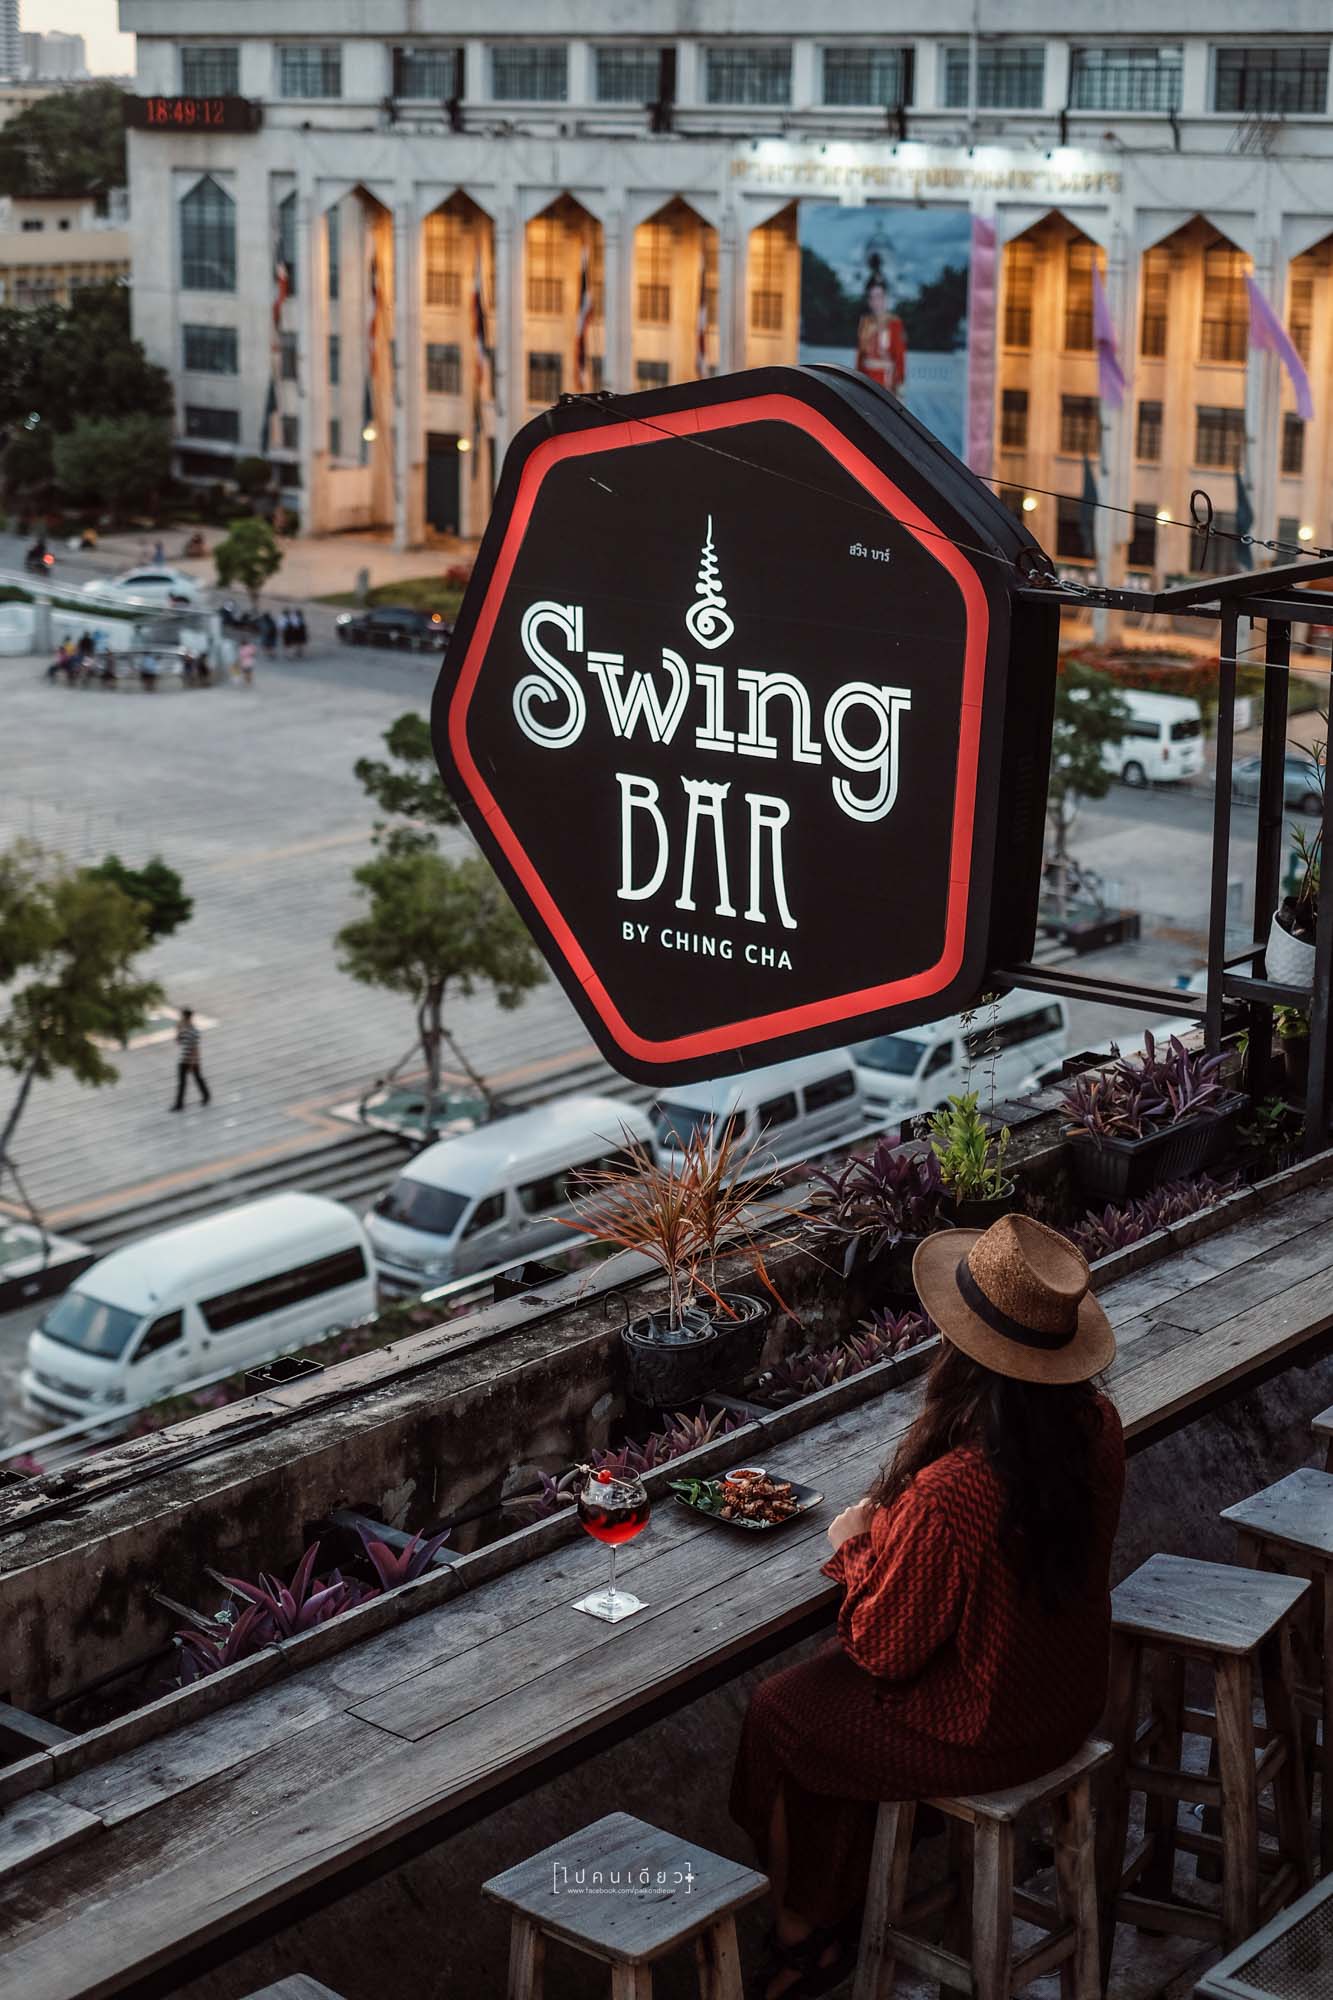 SwingBar, Swing Bar by Ching Cha, Swing Bar Bangkok, Hangout, บาร์ลับ, บาร์บนดาดฟ้า, ร้านลับๆ บนดาดฟ้า, เสาชิงช้า, วัดสุทัศน์, ภูเขาทอง, ร้านน่านั่ง, รีวิวกรุงเทพฯ